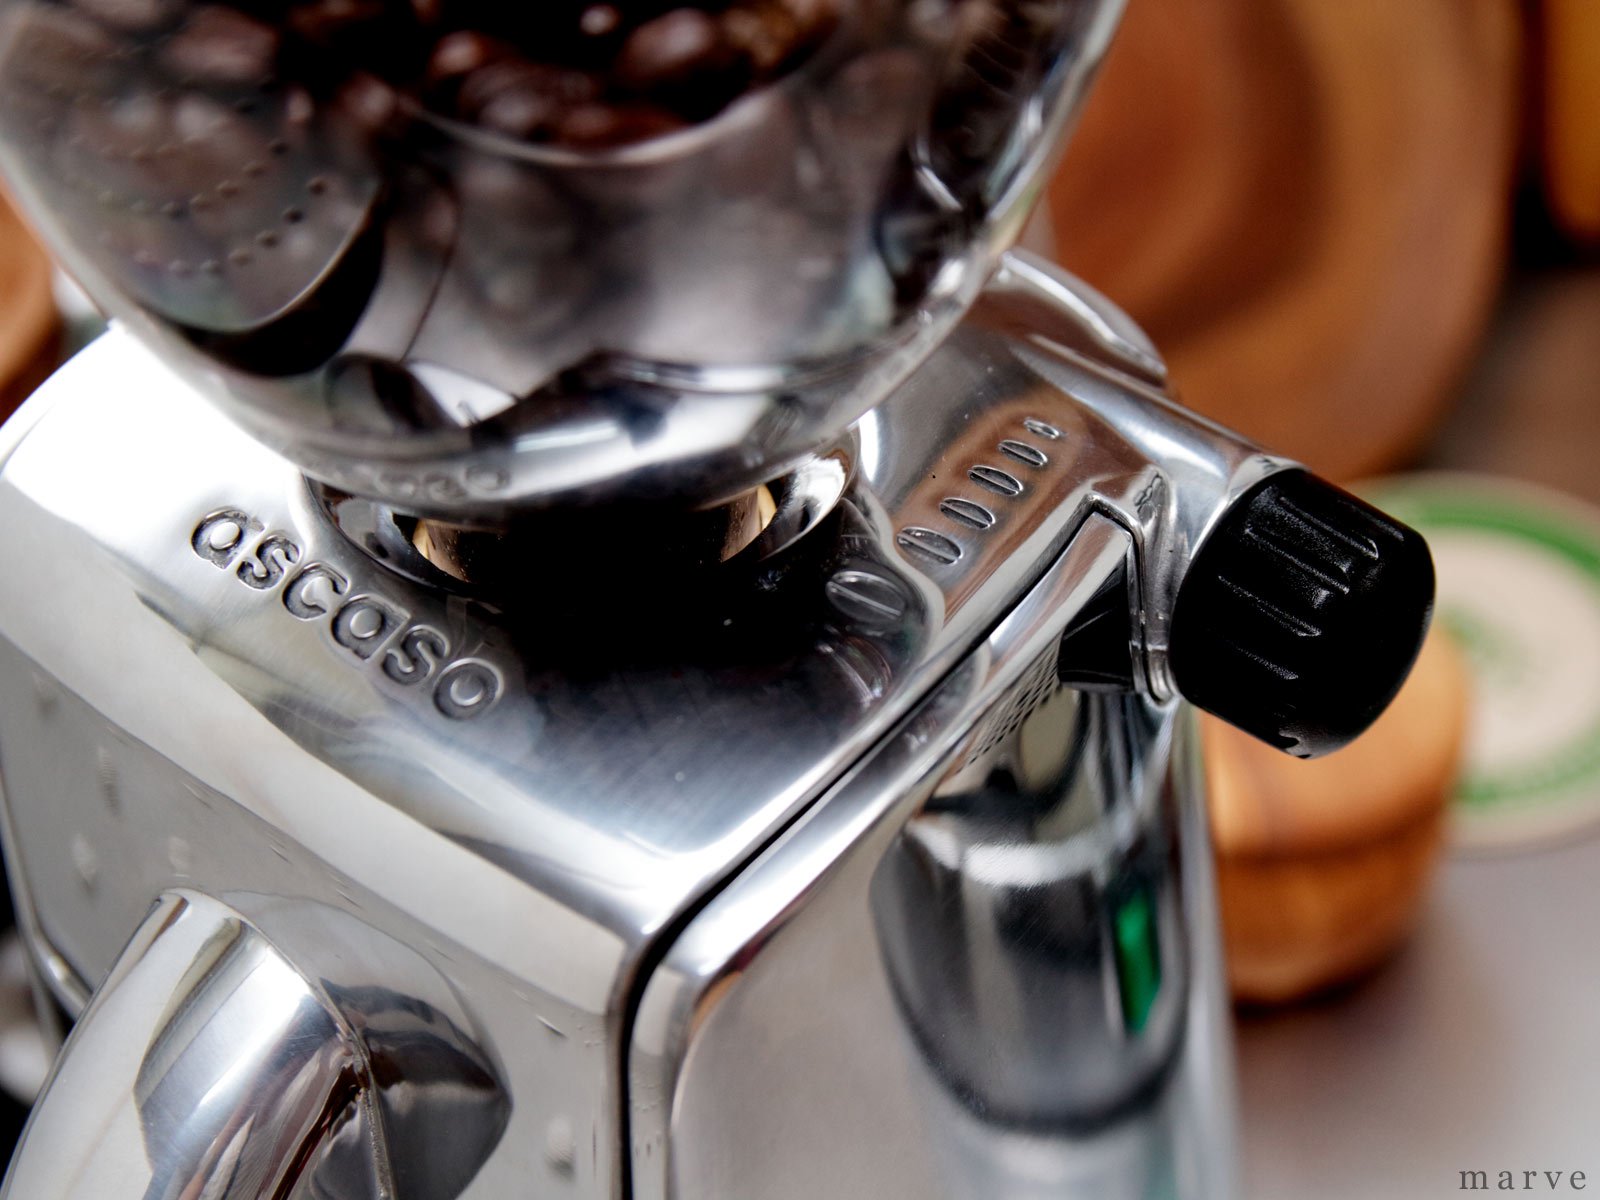 ASCASO（アスカソ）エスプレッソ用グラインダー　i-mini ポリッシュ - mp COFFee GEAR ONLINE SHOP  （エムピーコーヒーギア）コーヒーツールの専門ショップ